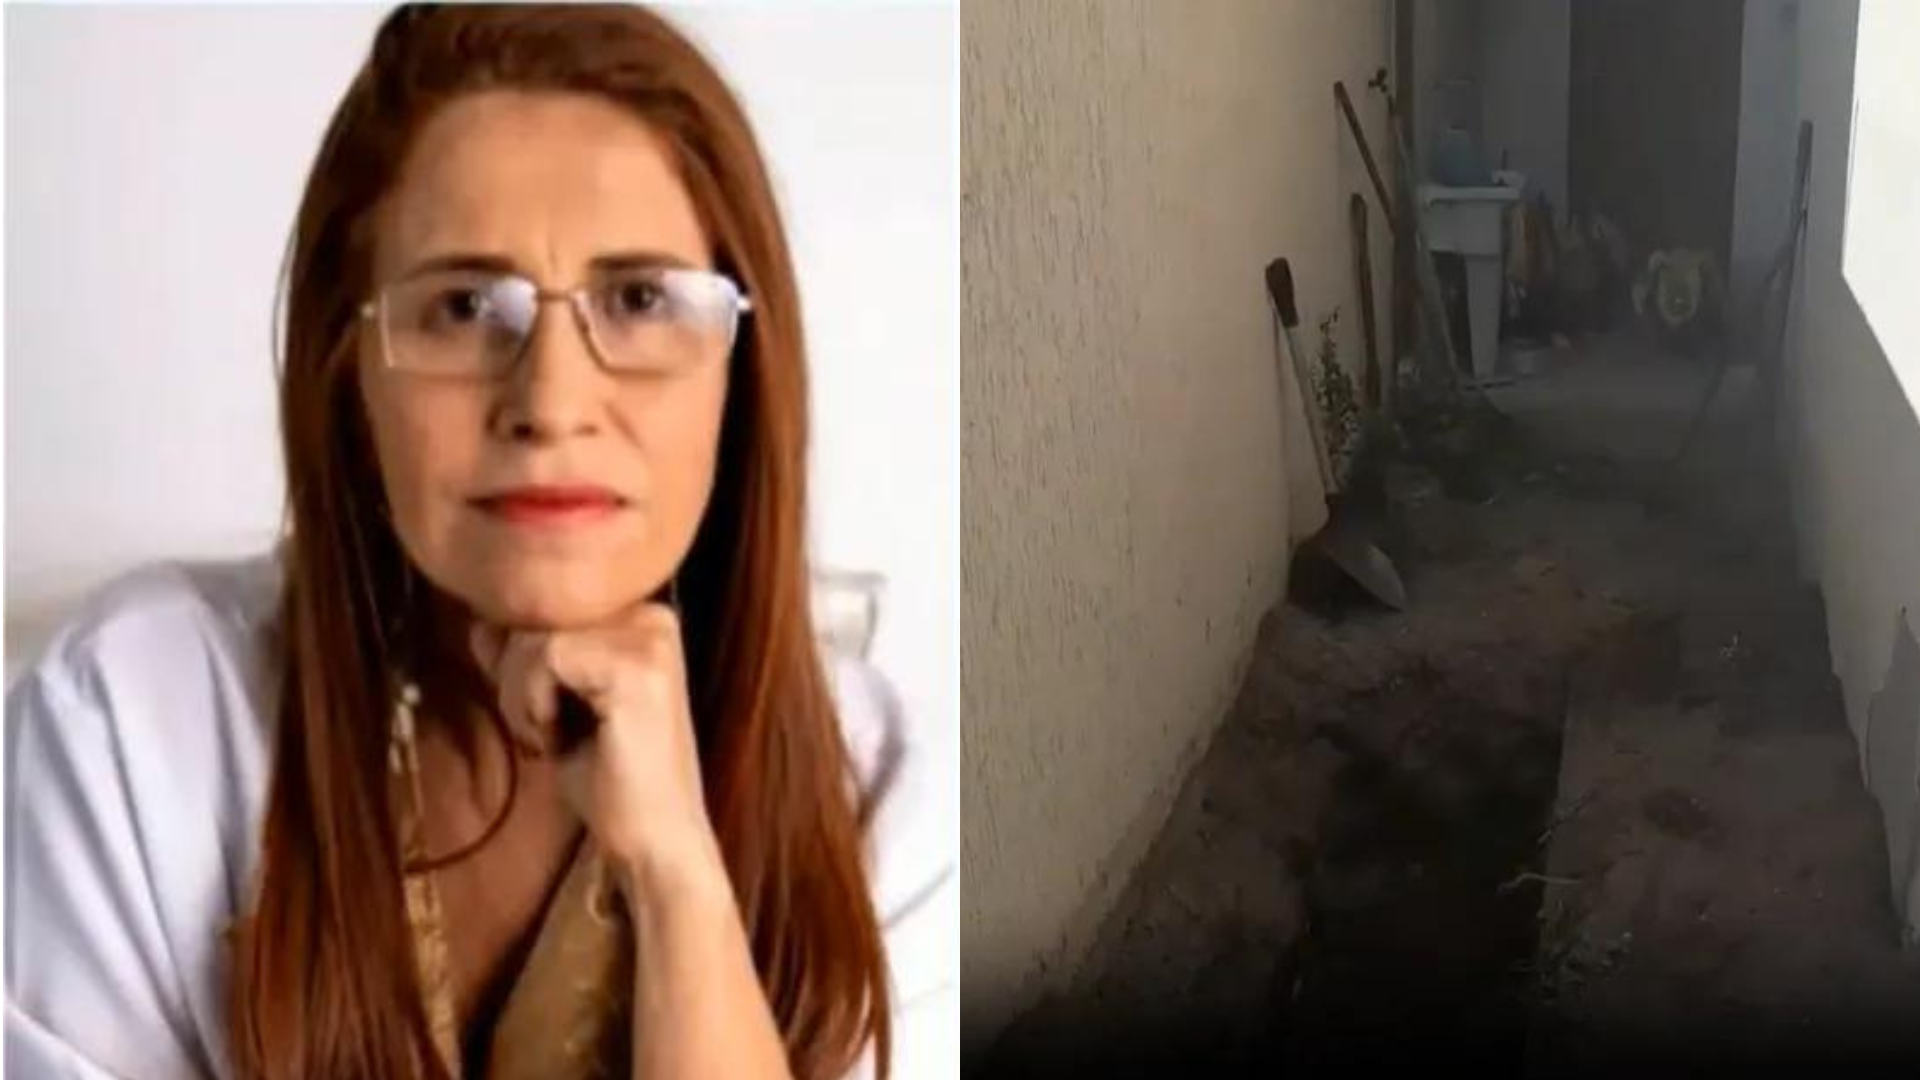 Médica desaparecida há oito meses é encontrada morta e enterrada no próprio quintal, no RJ